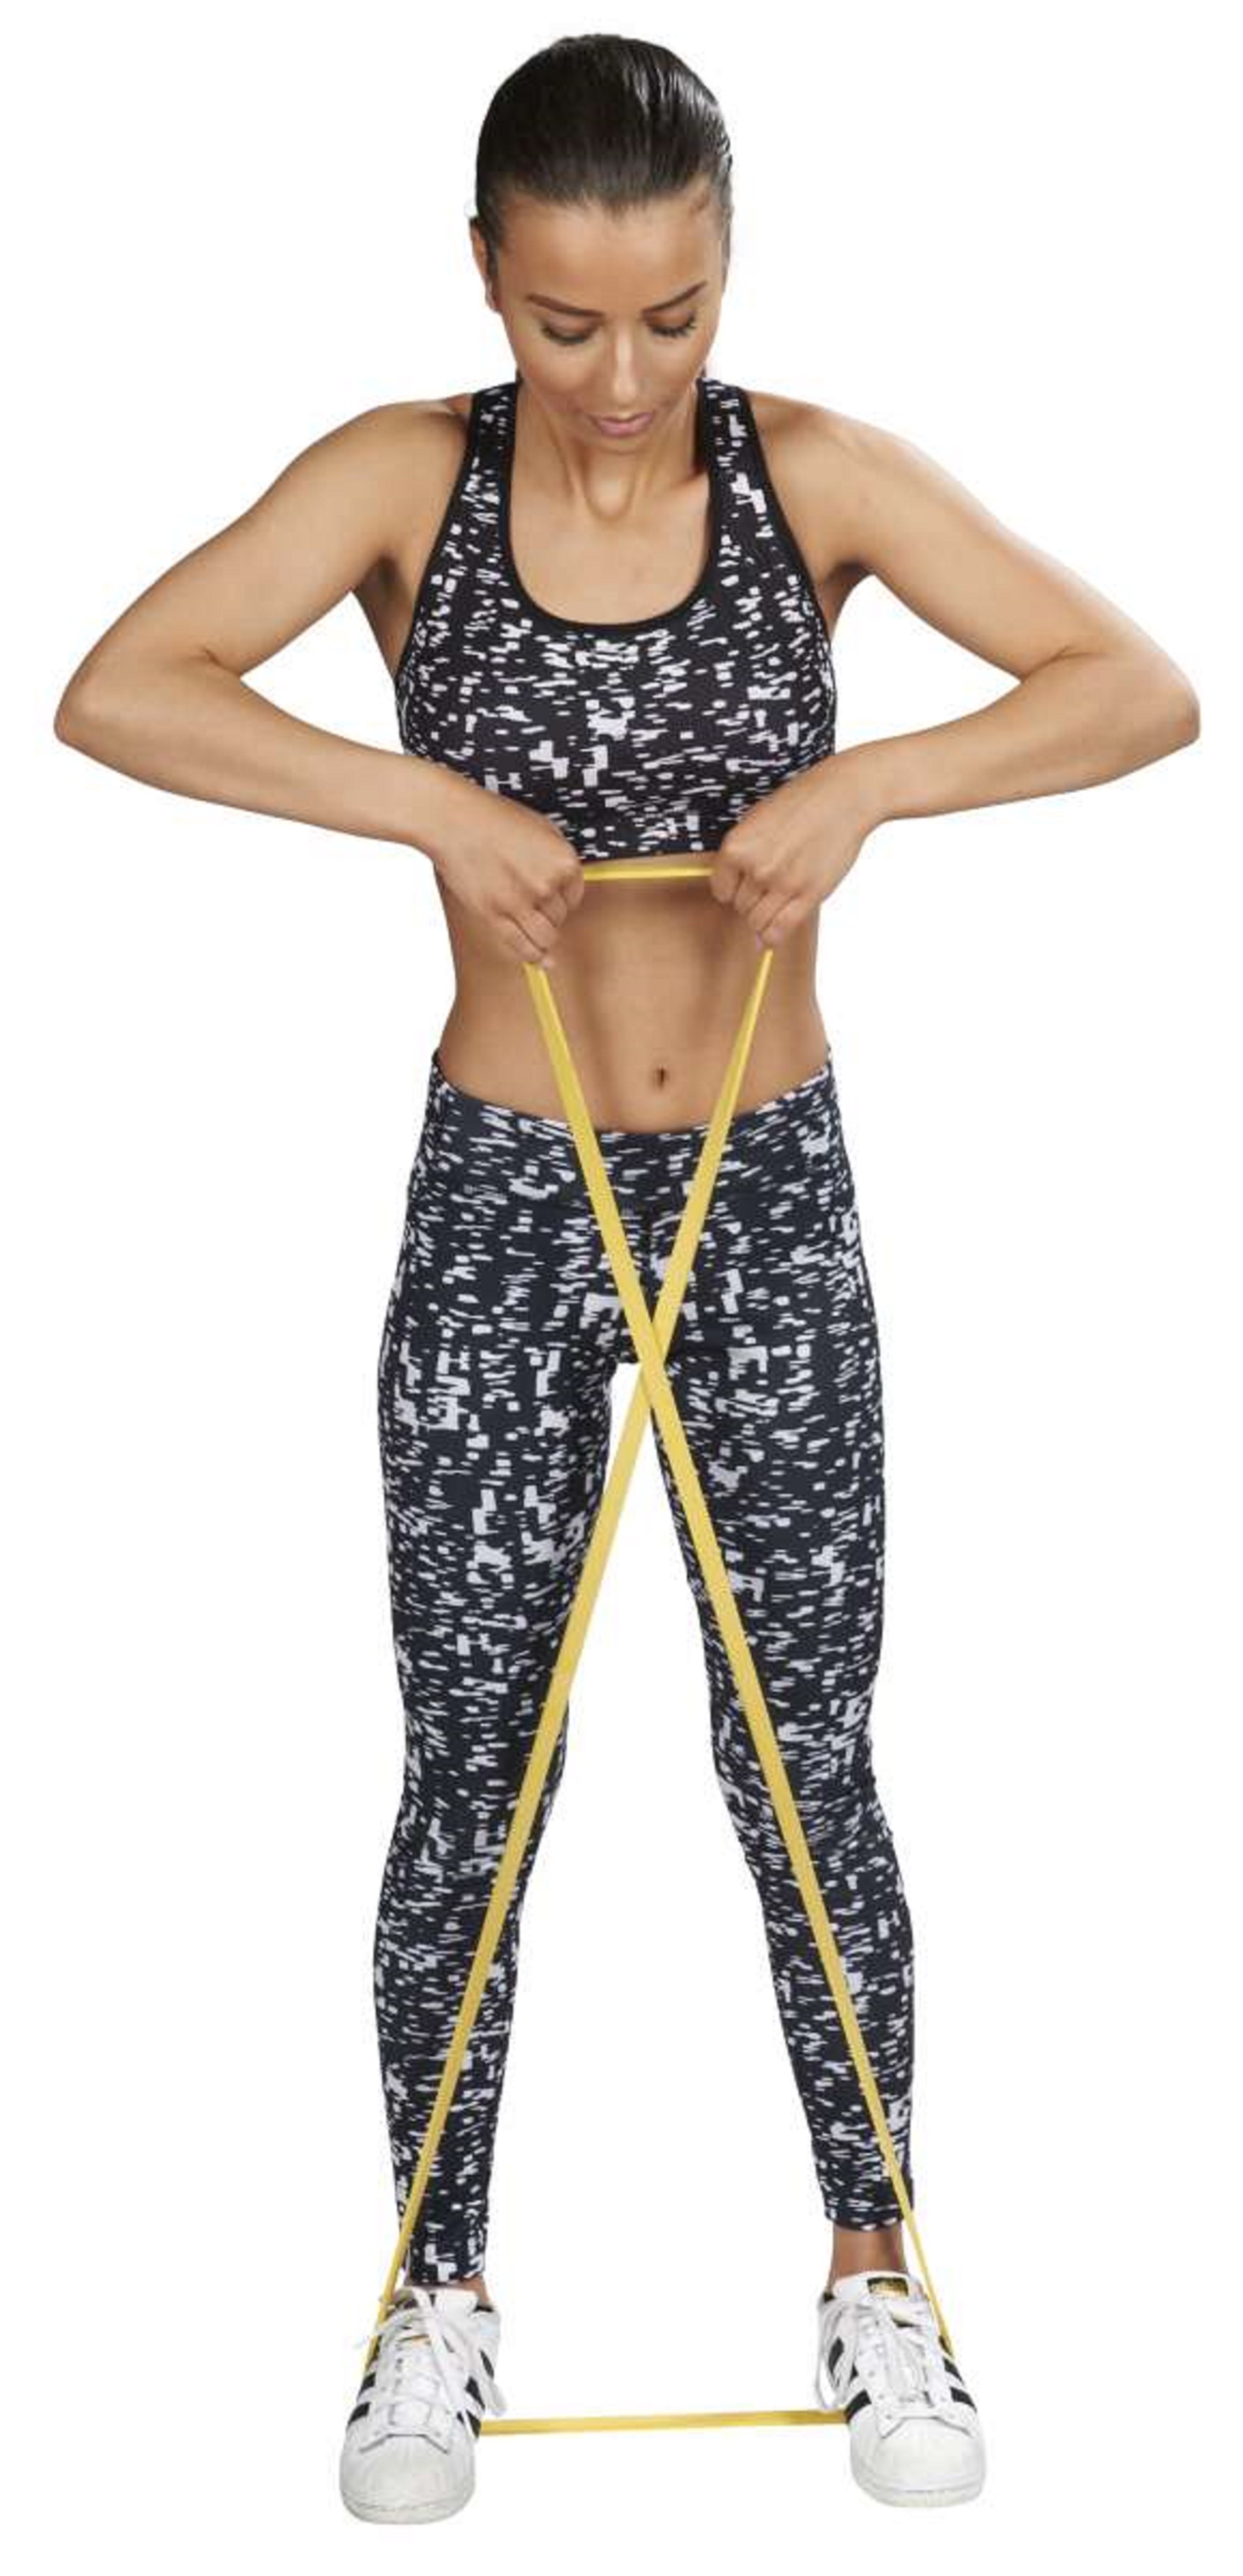 Banda elastica pentru dezvoltarea musculaturii, Pentru atleti, 15-38 kg, 1.3m